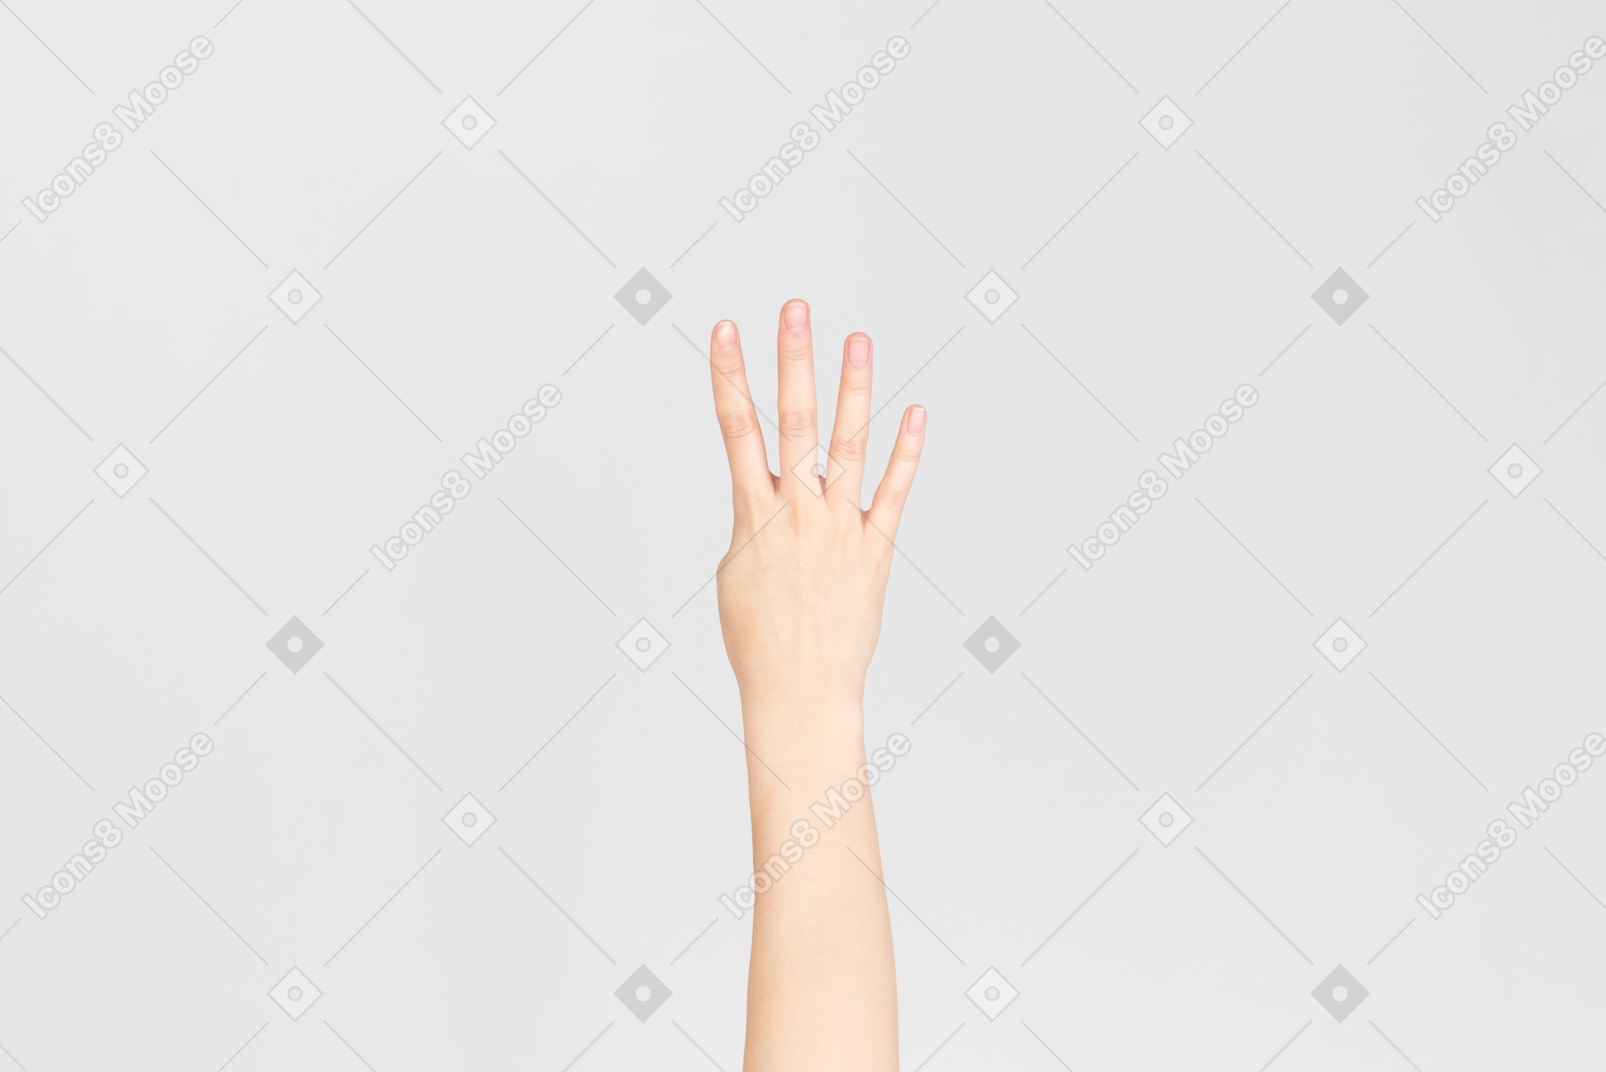 4 개의 손가락을 보여주는 여성 손